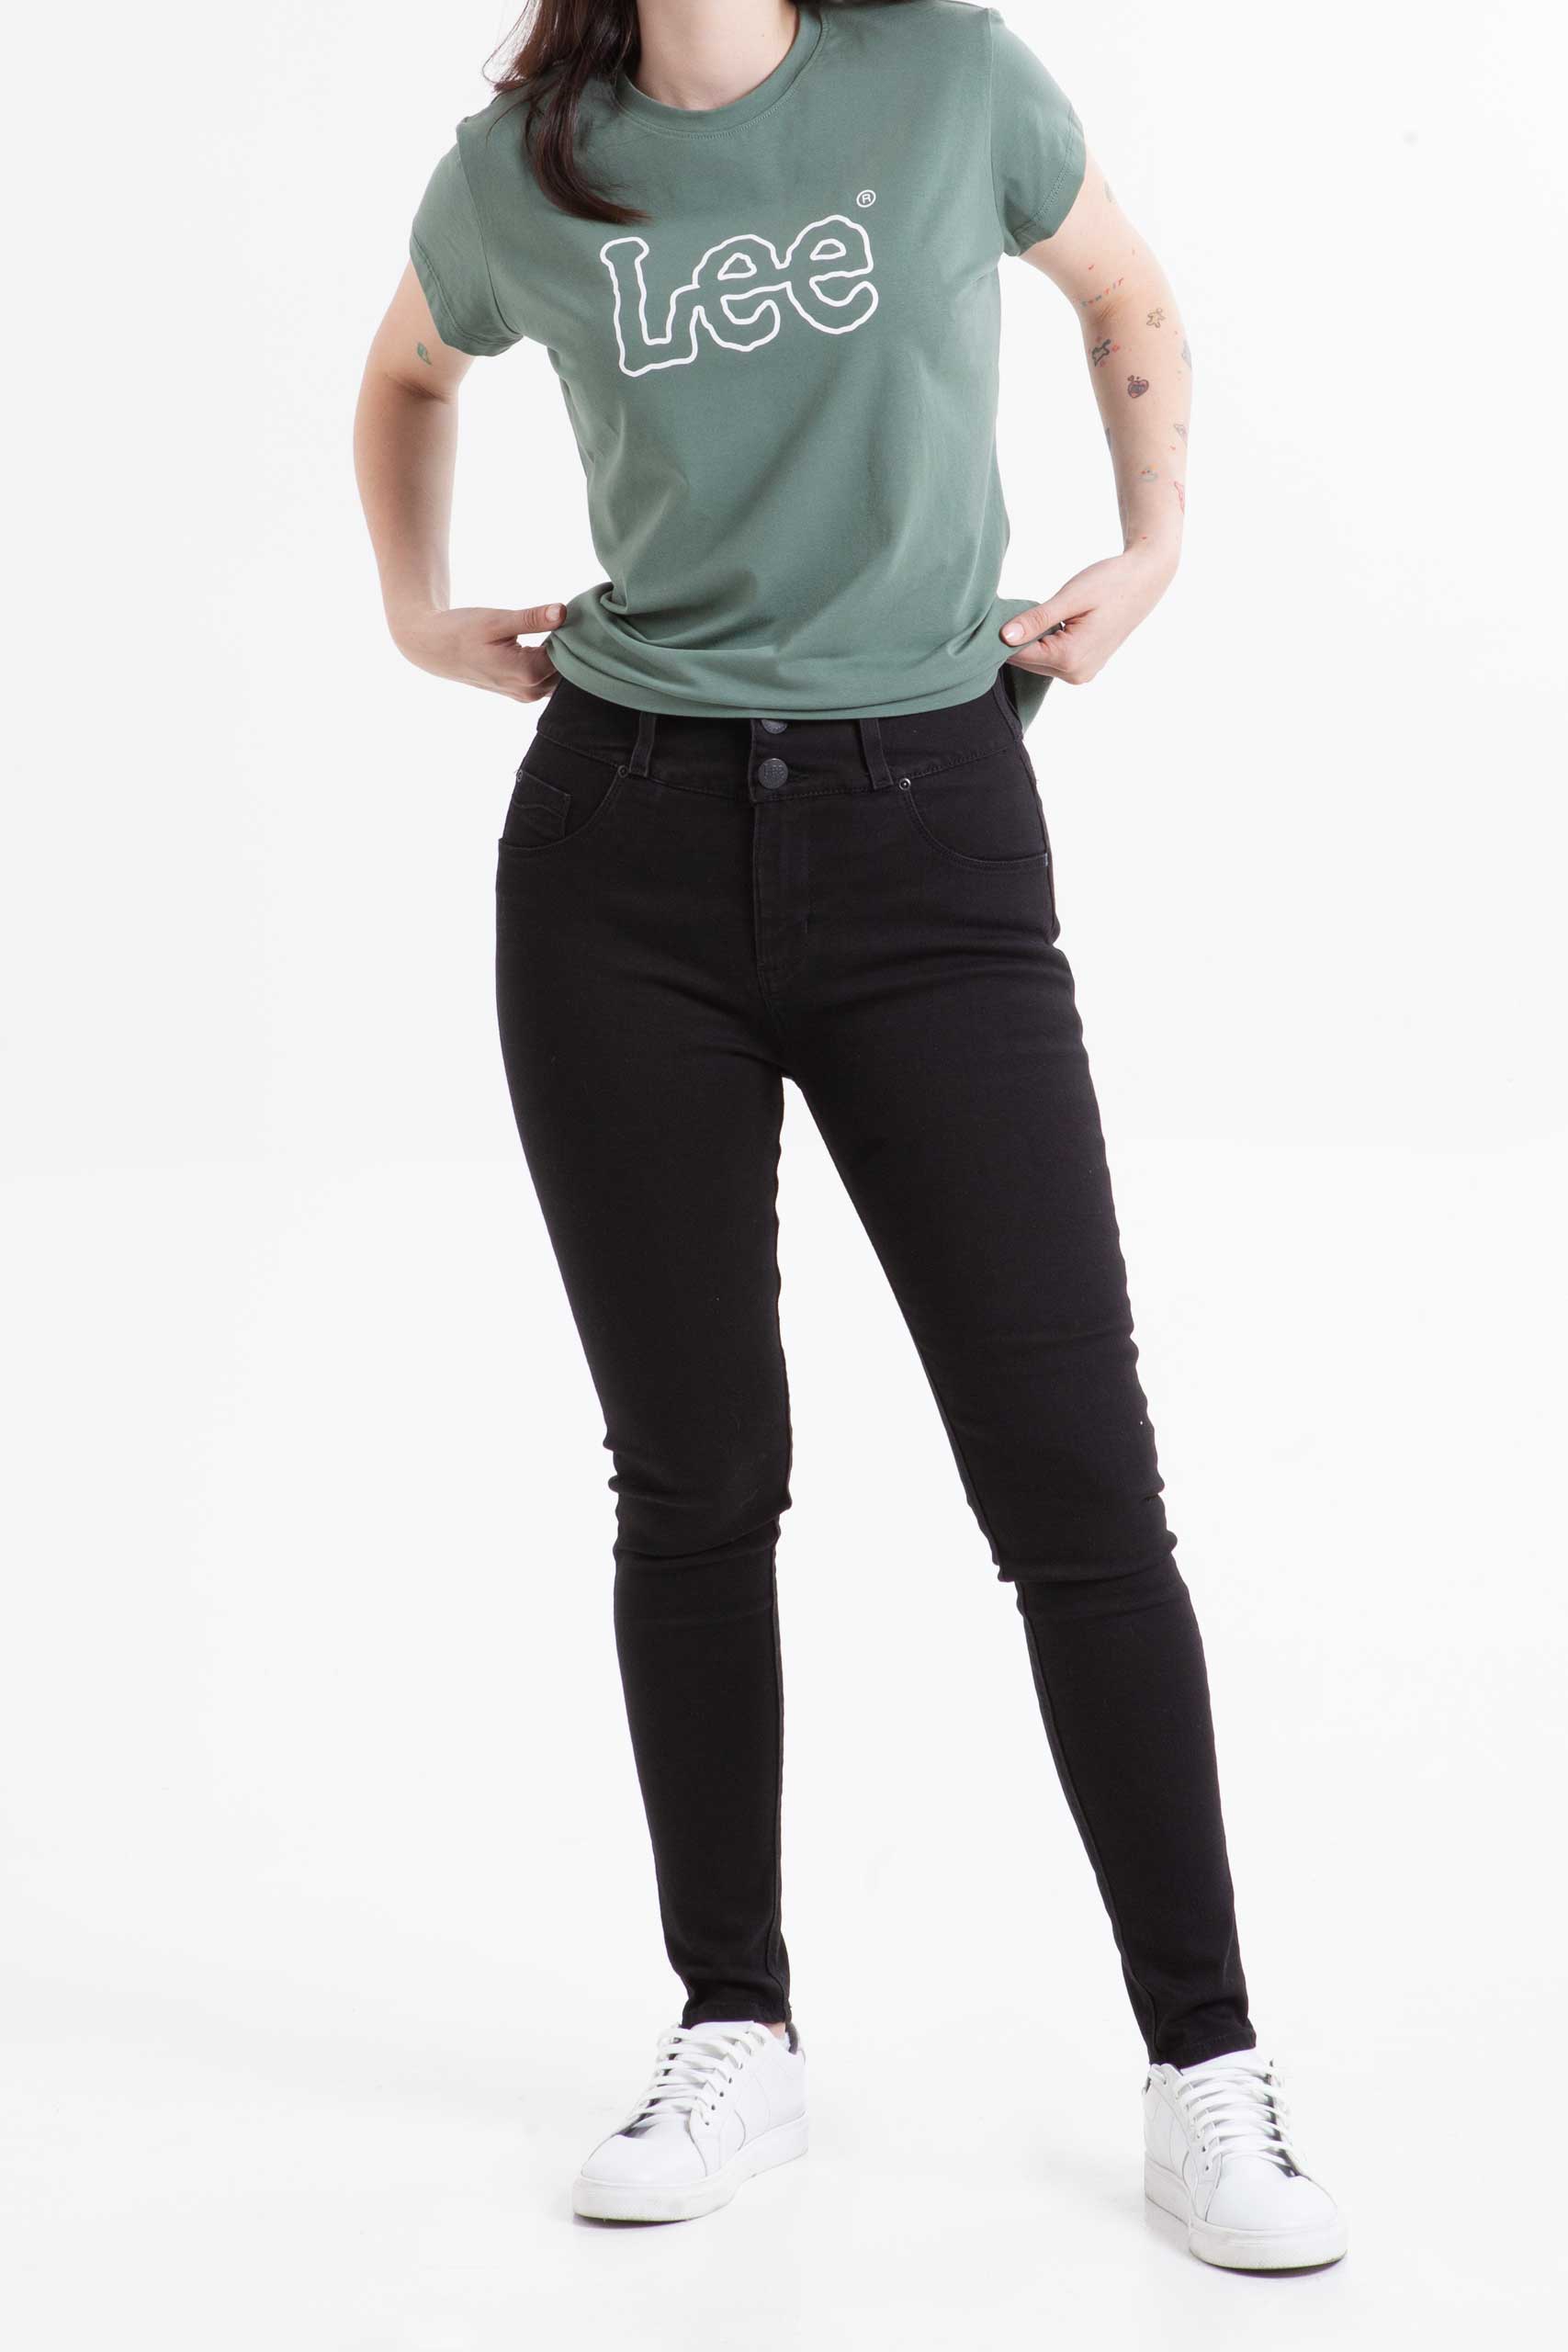 Vista frontal de jean color negro de pierna skinny de marca lee.